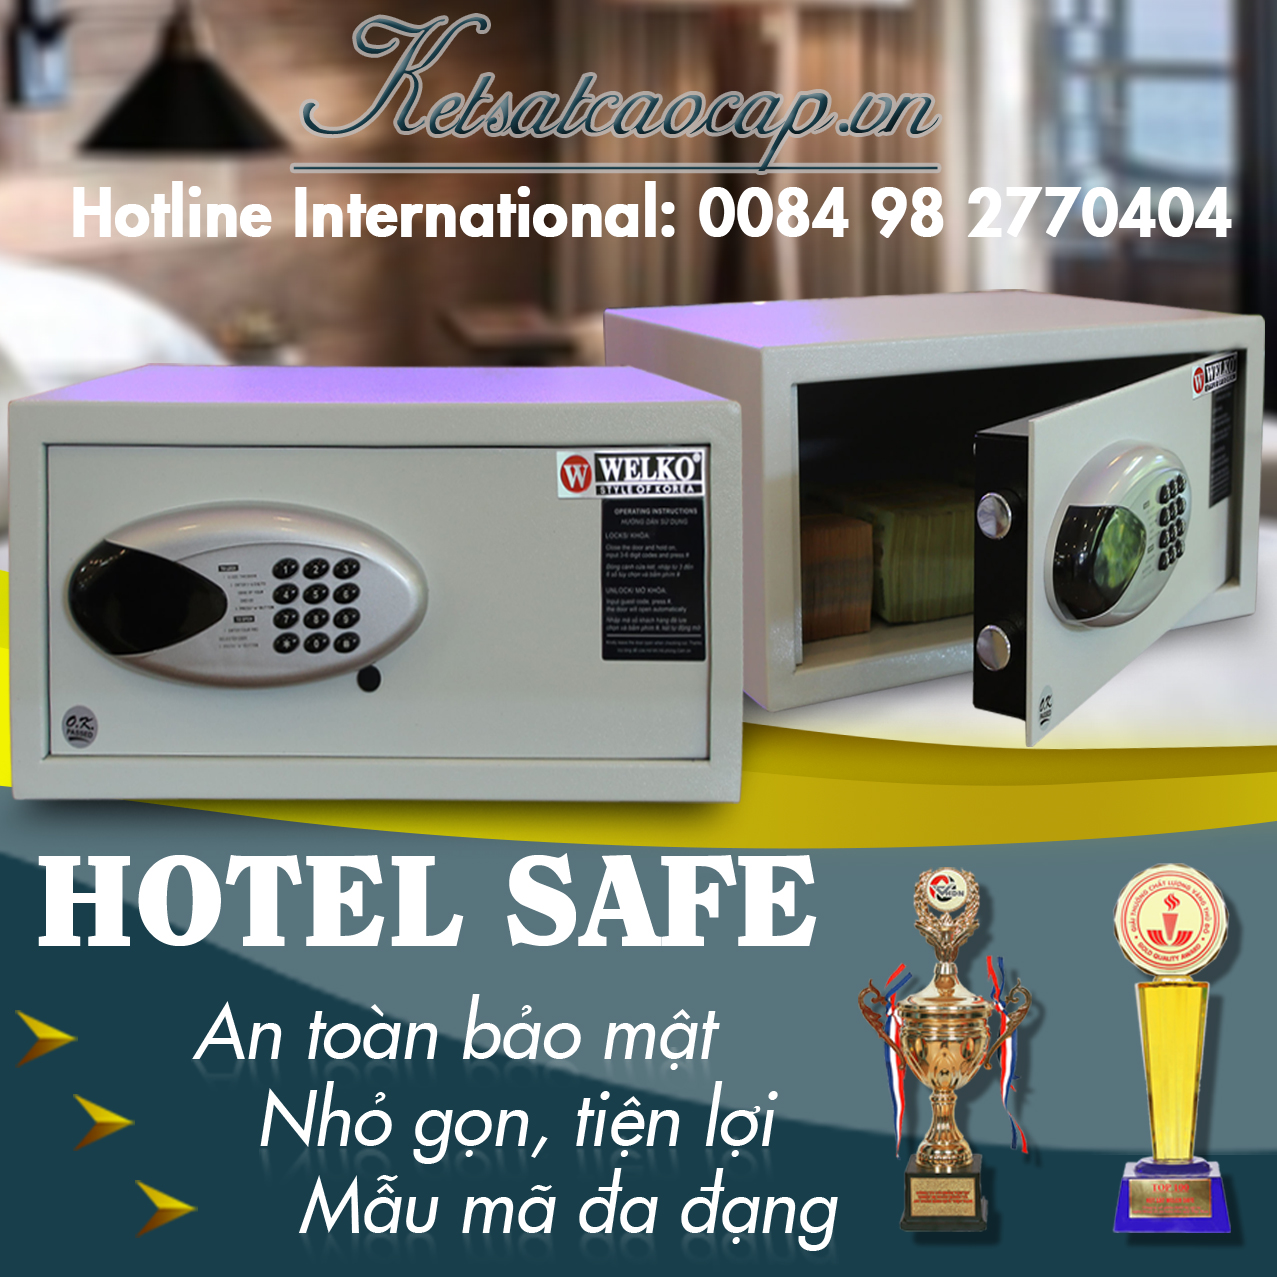 Hotel safe